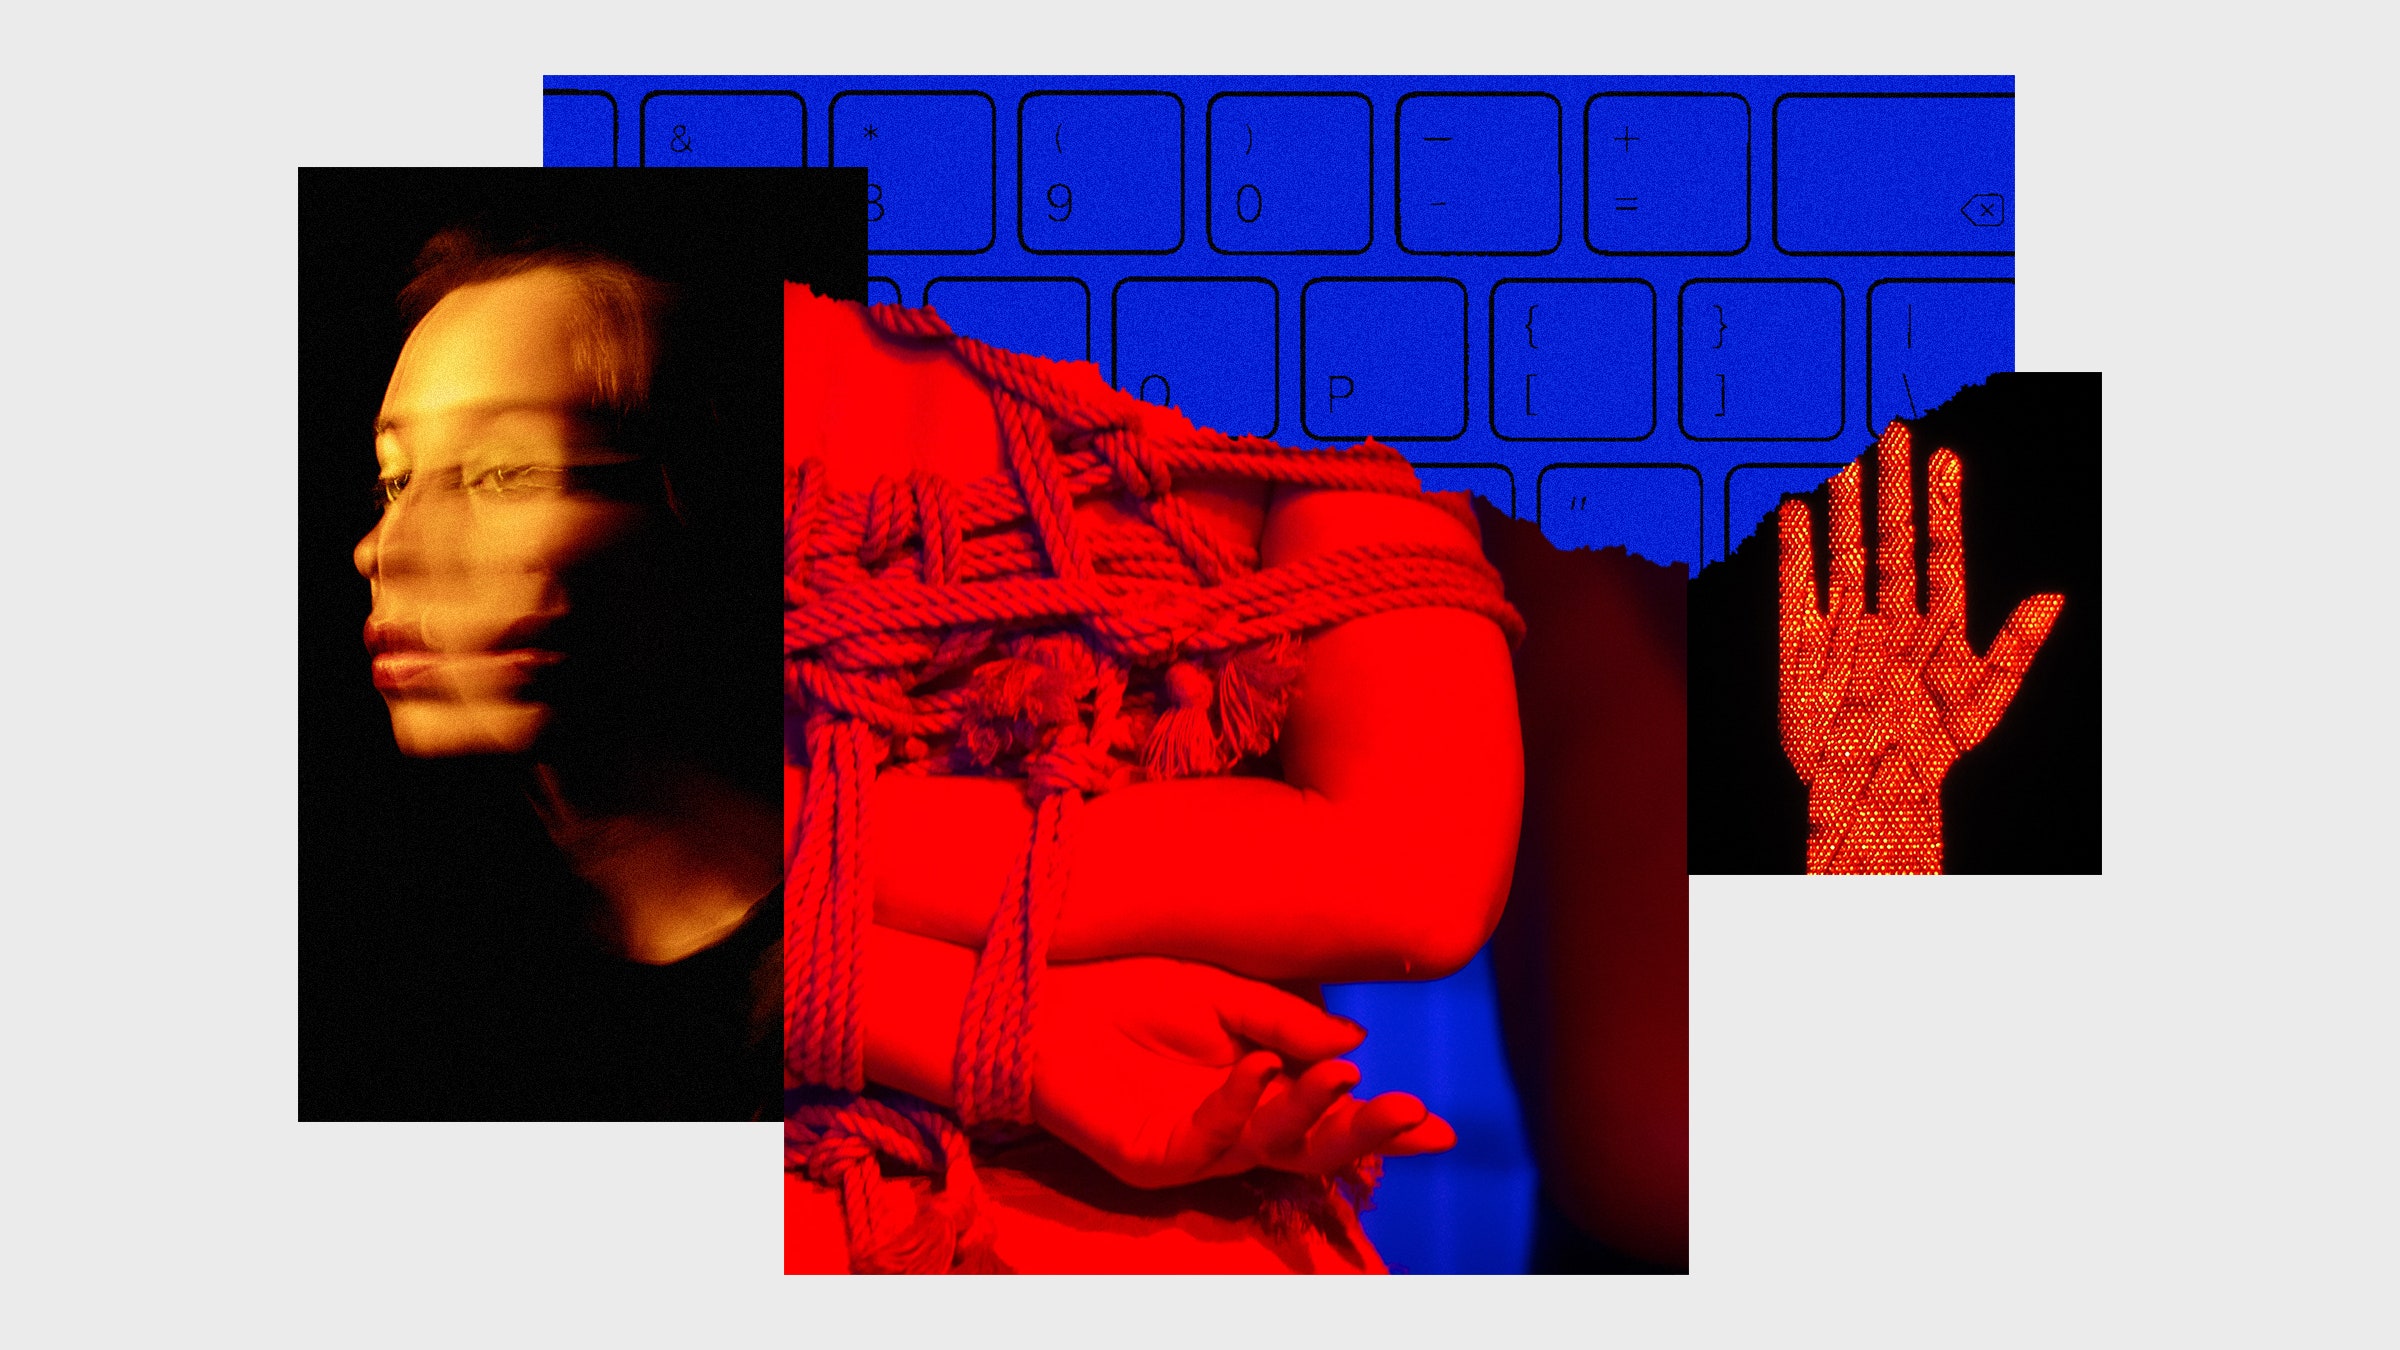 Colagem de fotos de uma pessoa amarrada, rosto embaçado, teclado de computador e uma mão parada